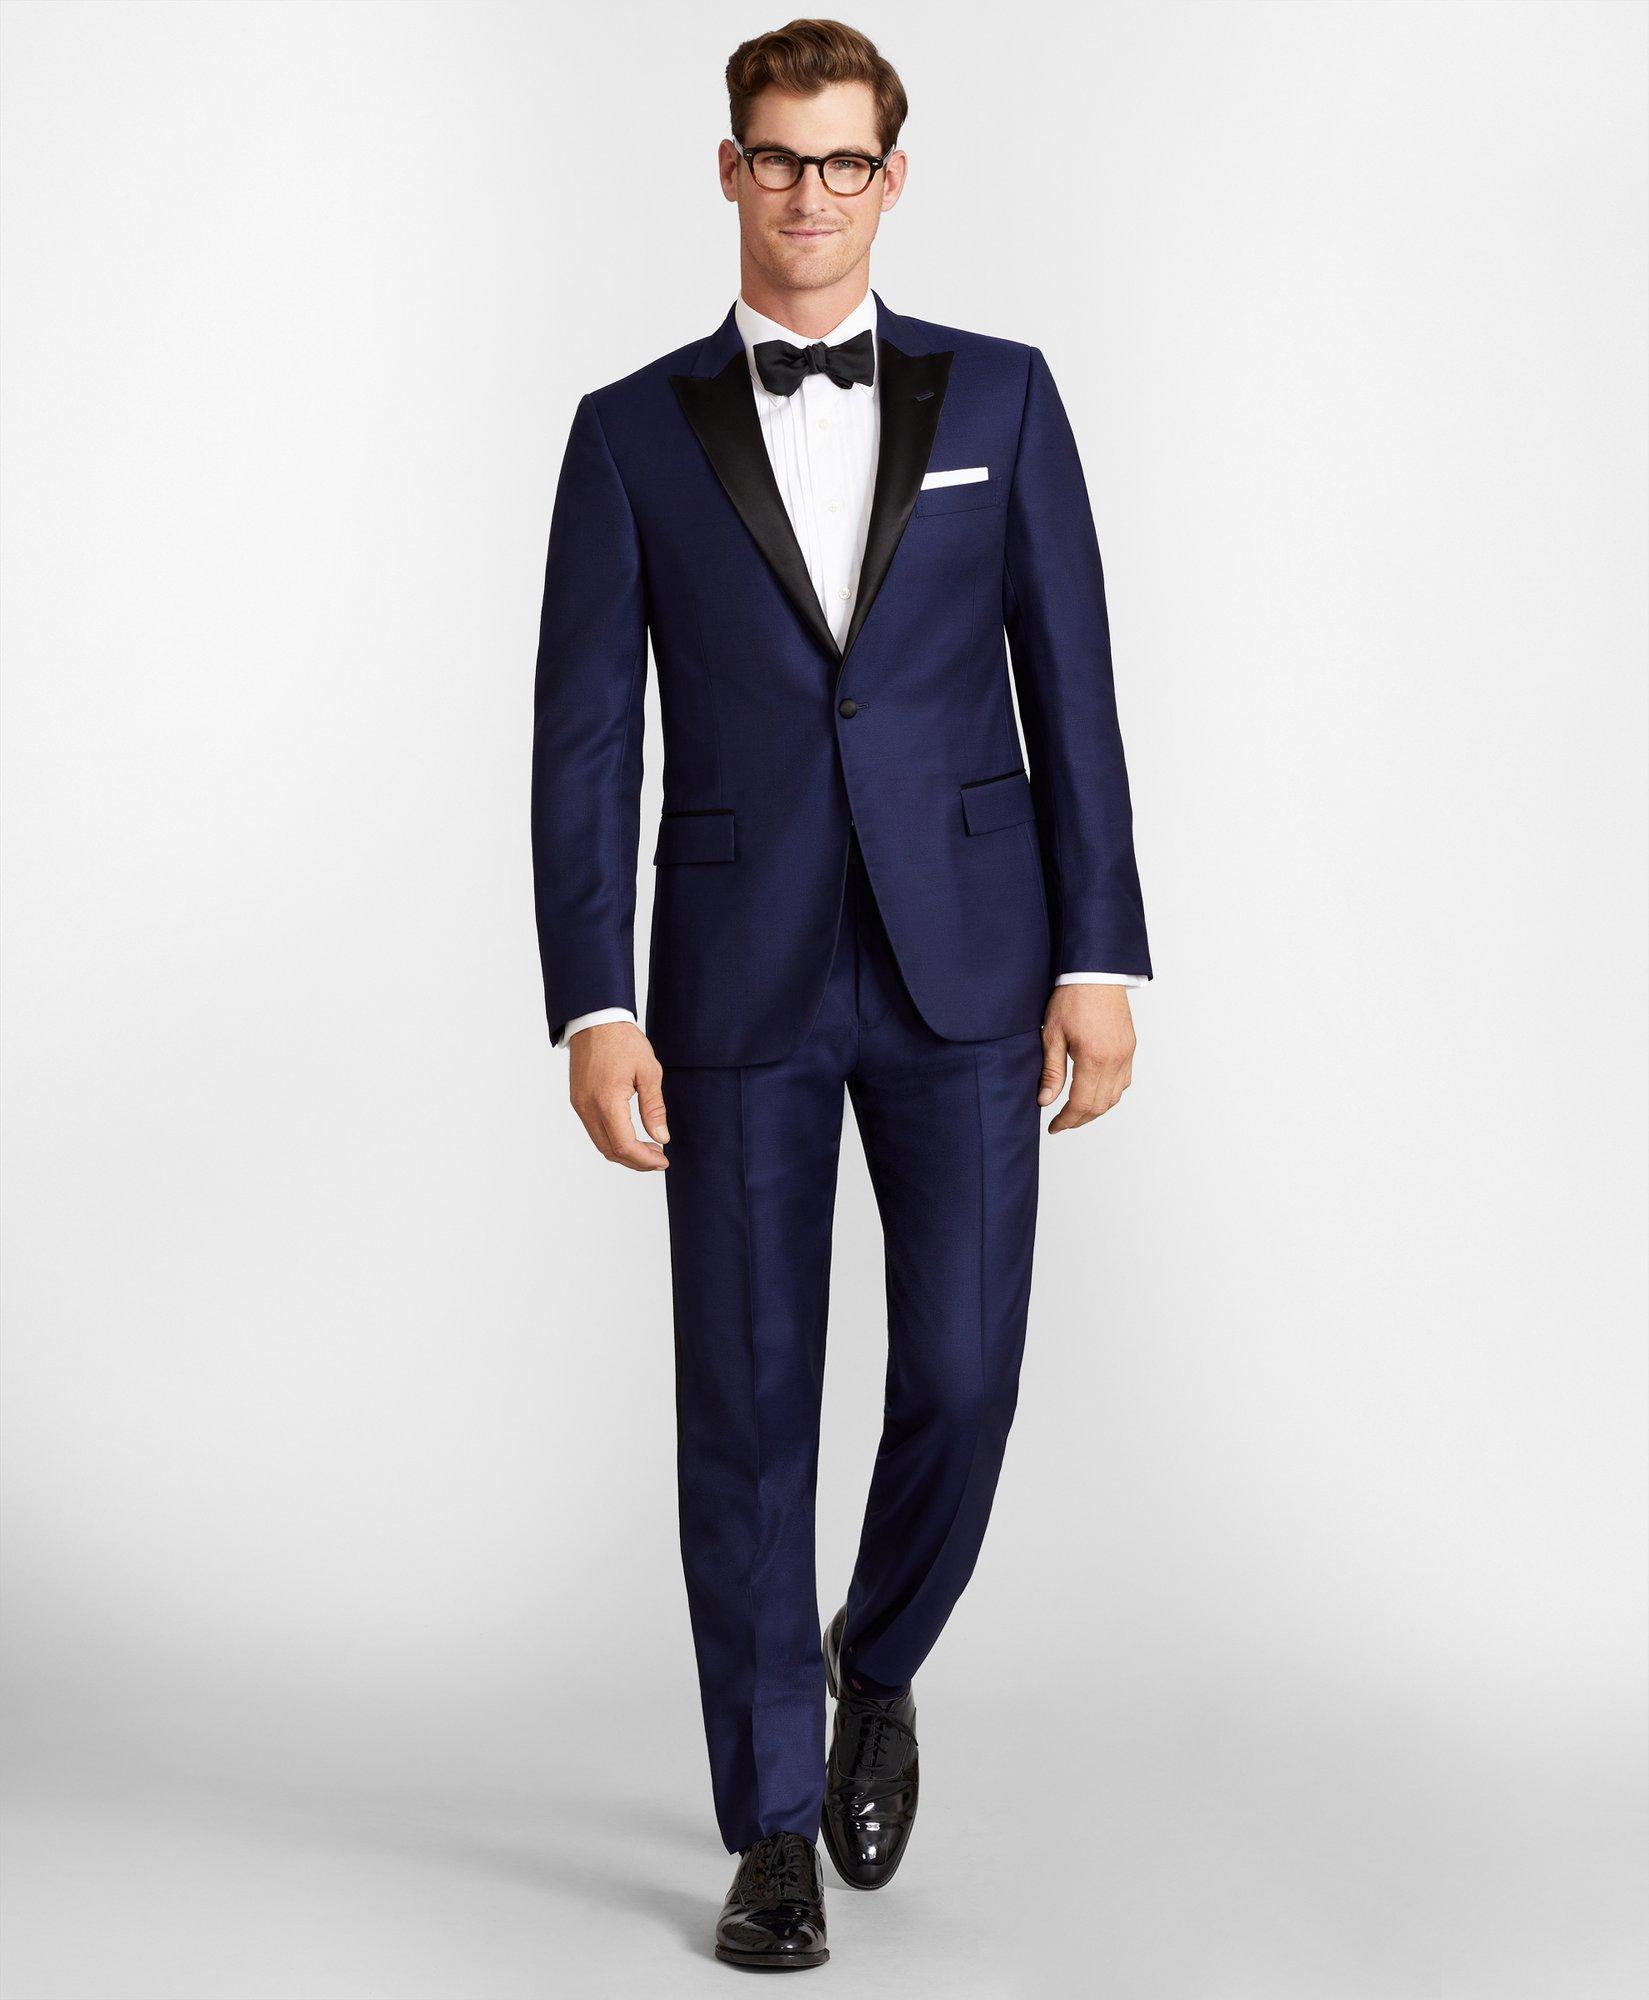 Men's Tuxedos ☀ Men's Formal Wear ...